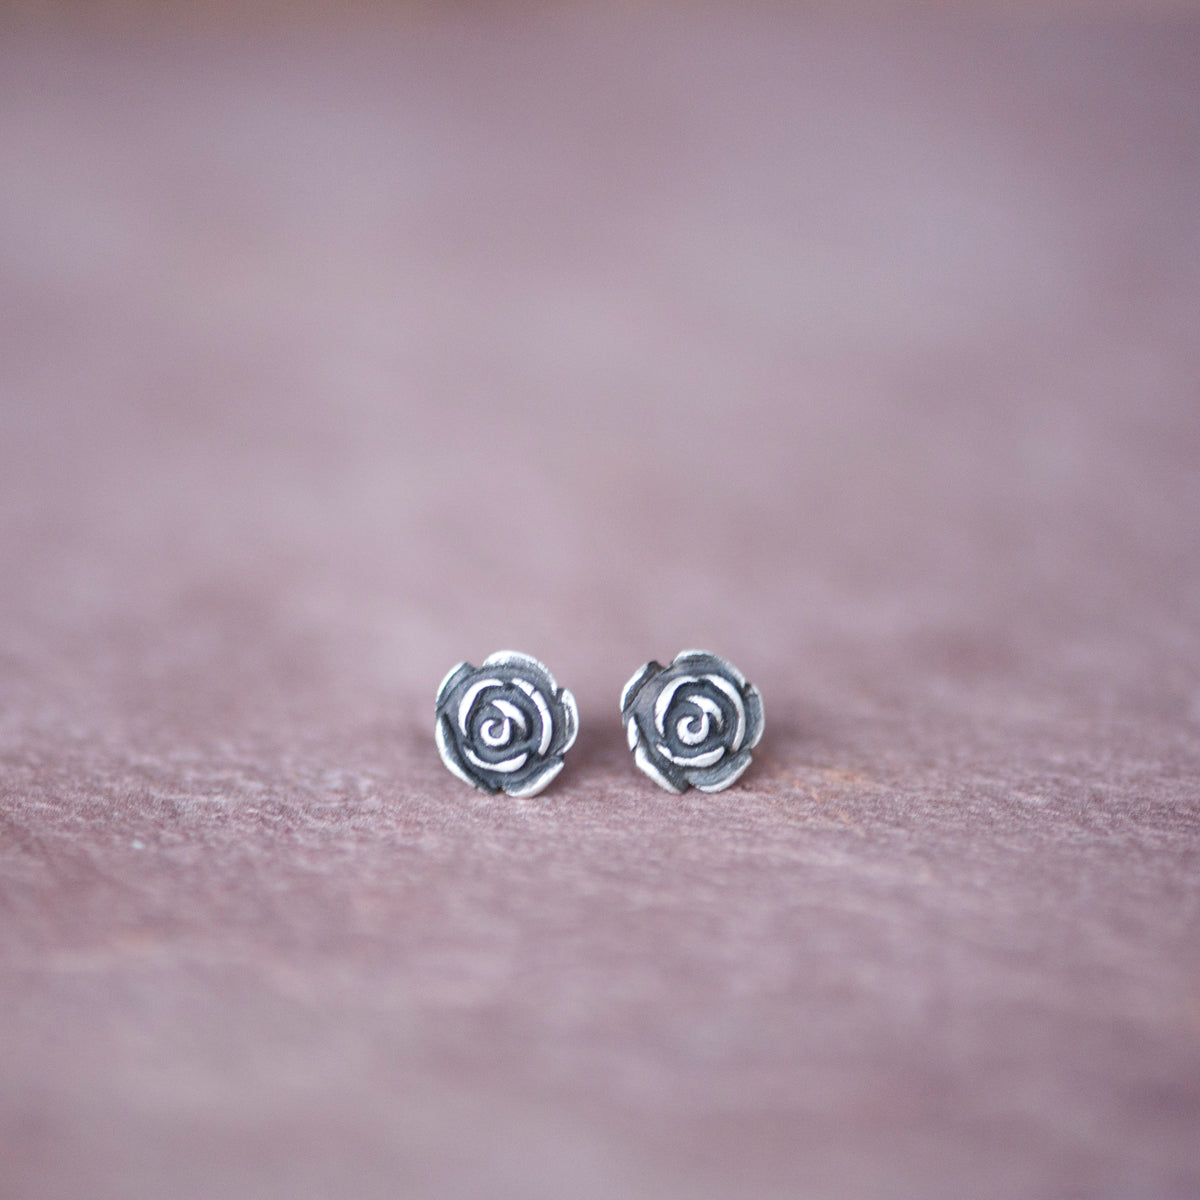 Silver Rose Stud Earrings from Jester Swink - Jester Swink